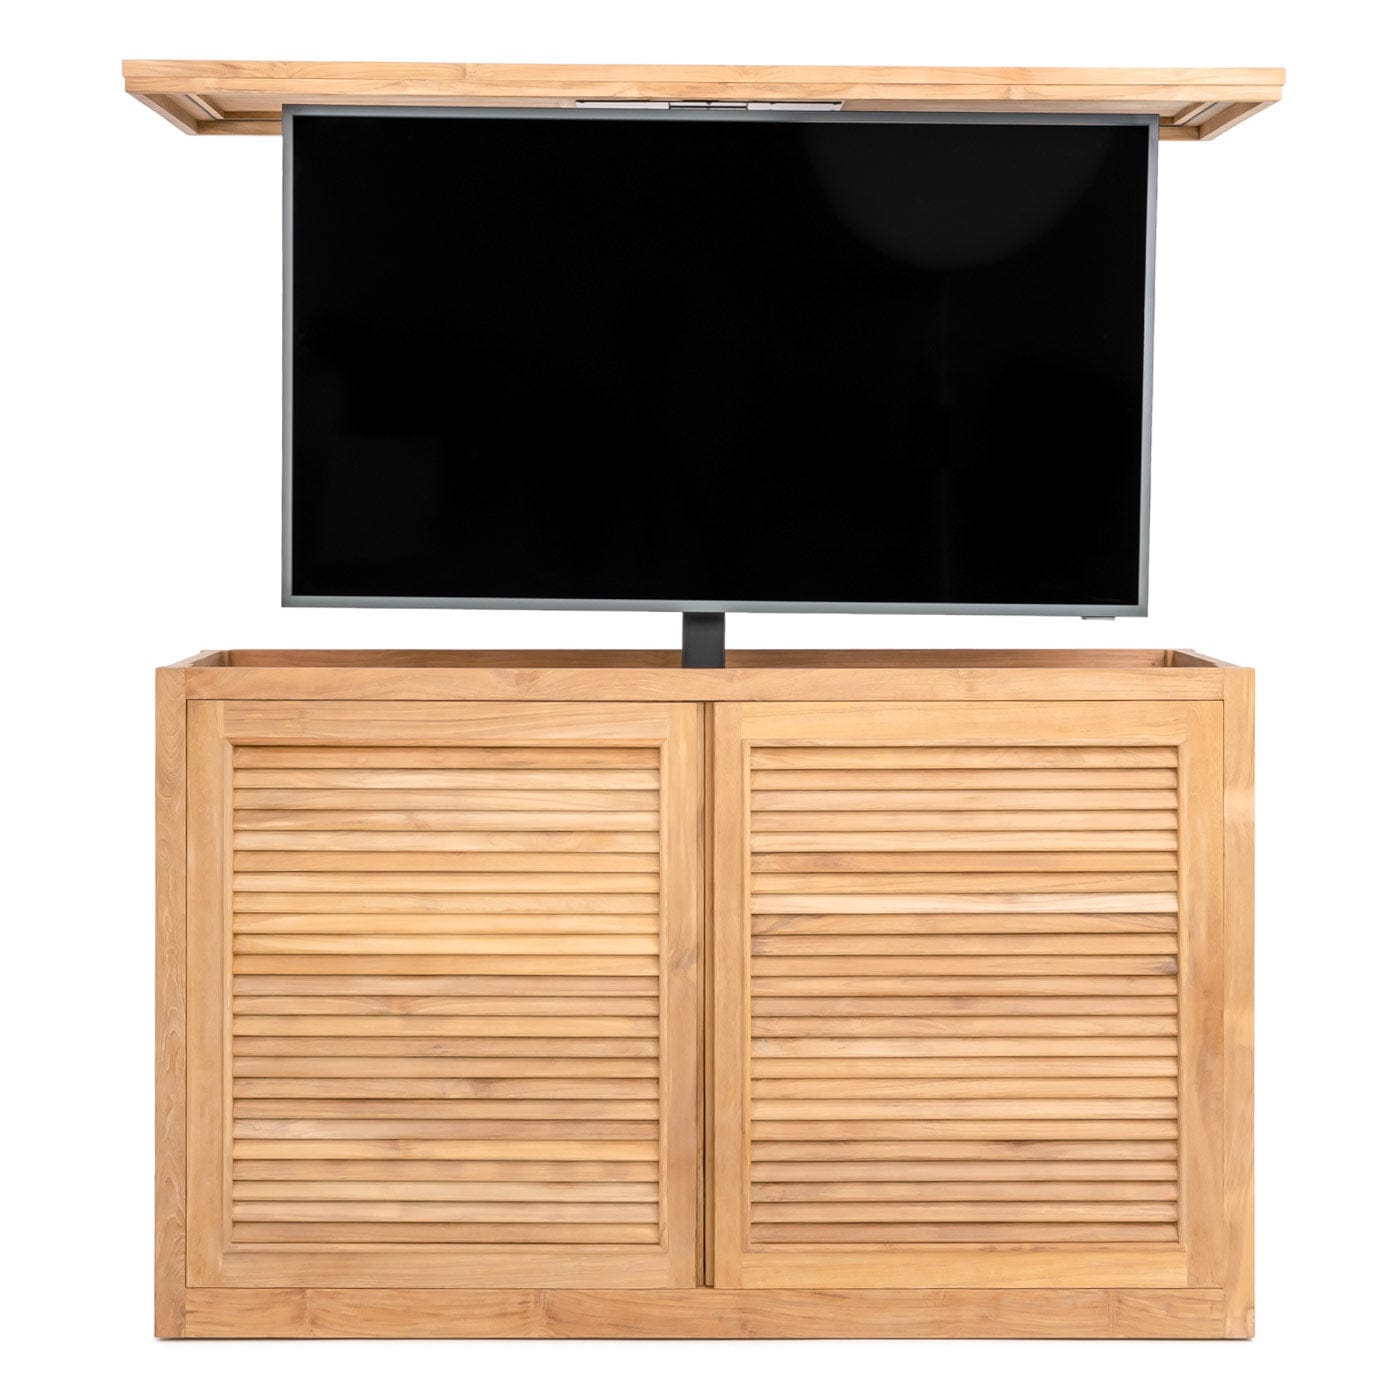 TechTeak 70064 Outdoor TV Lift Cabinet for 65 inch Flat Screen TVs